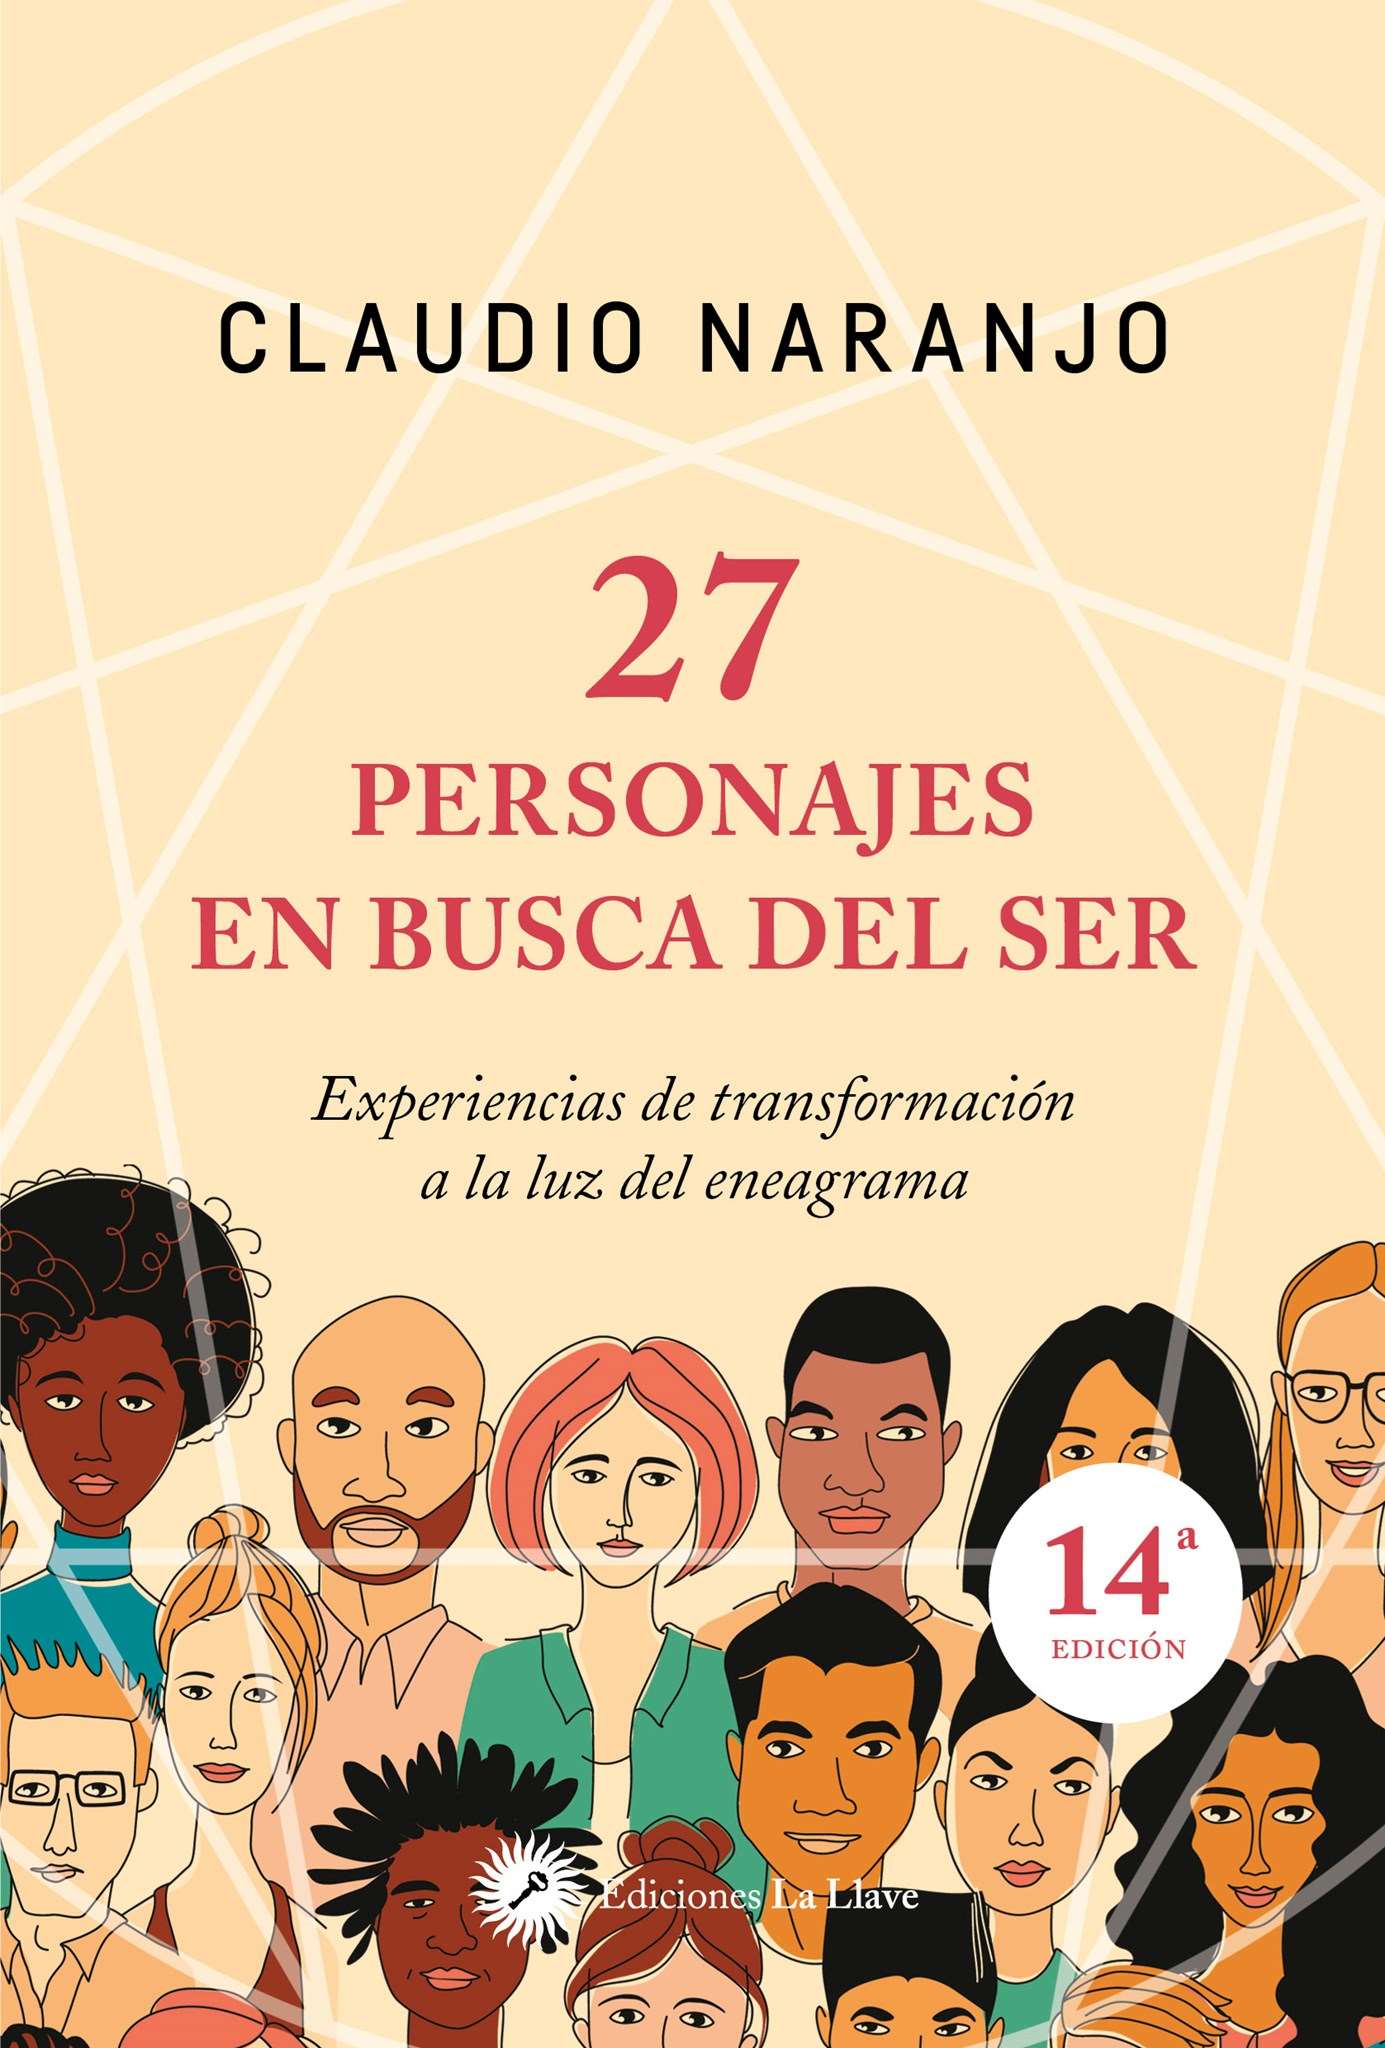  27 personajes en busca del ser: Experiencias de transformación a la luz del eneagrama, de Claudio Naranjo (Ediciones La Llave)